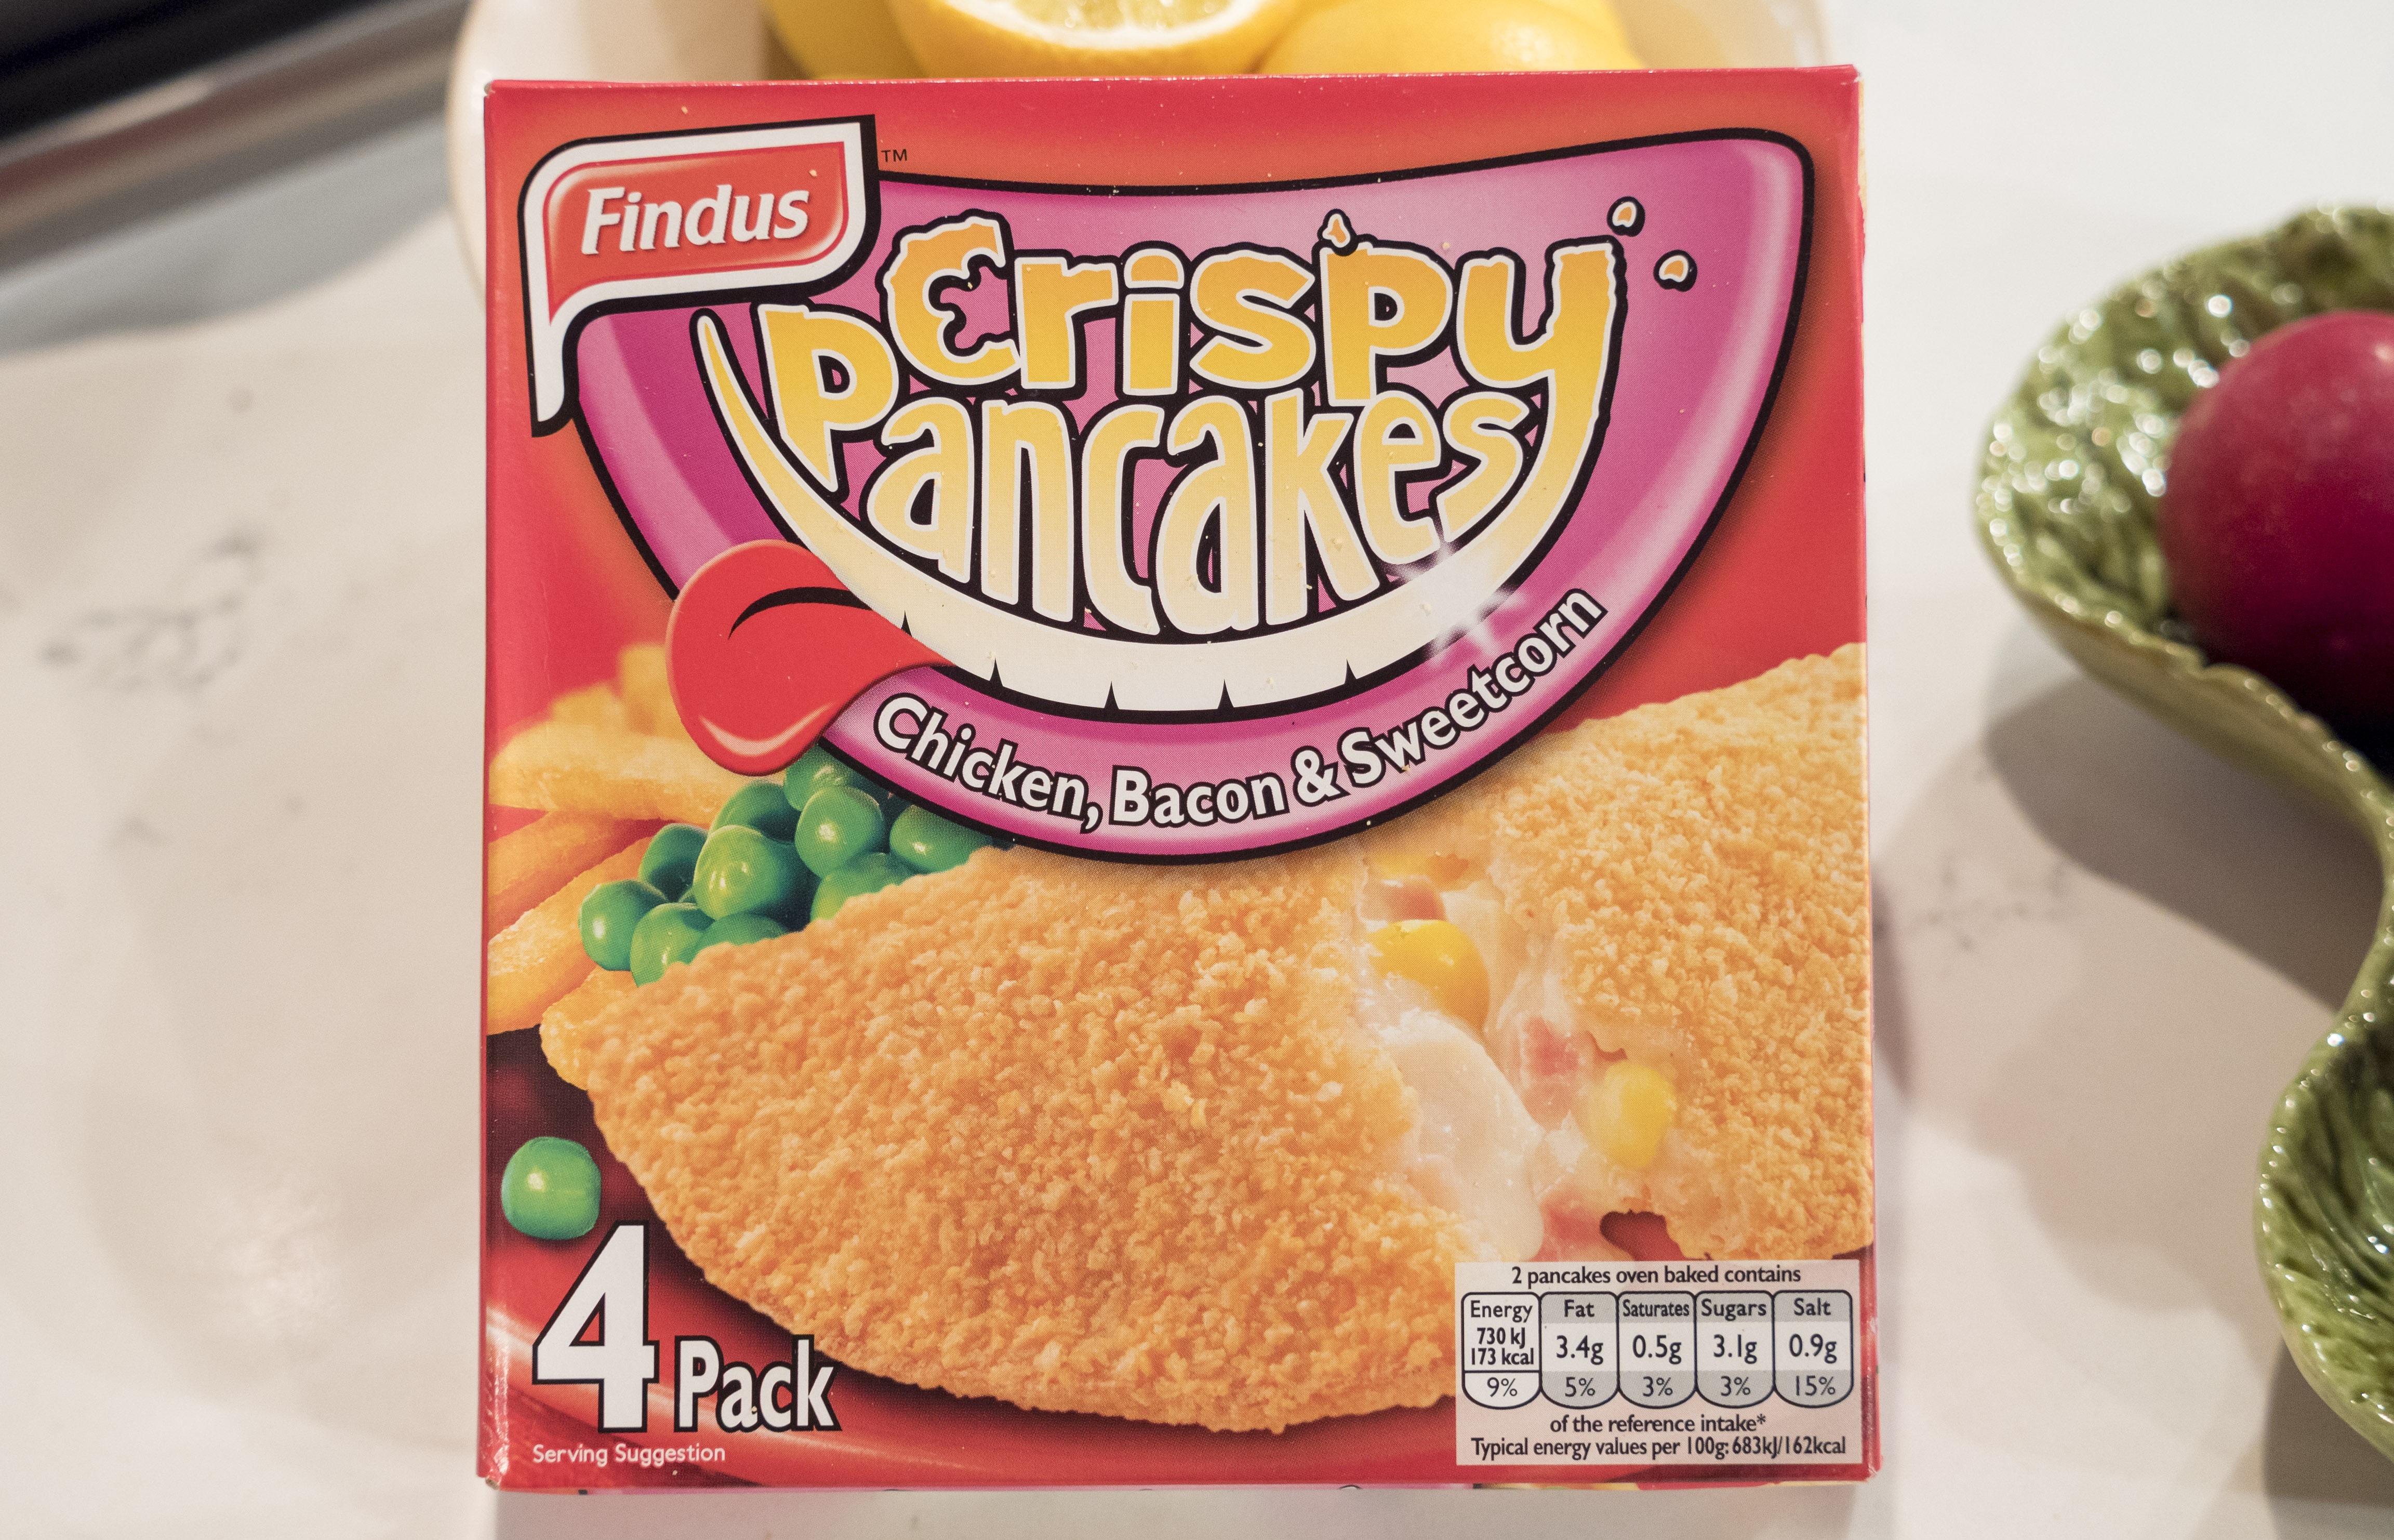 Die Findus Crispy Pancakes sind seit den 1950er Jahren ein Fanfavorit